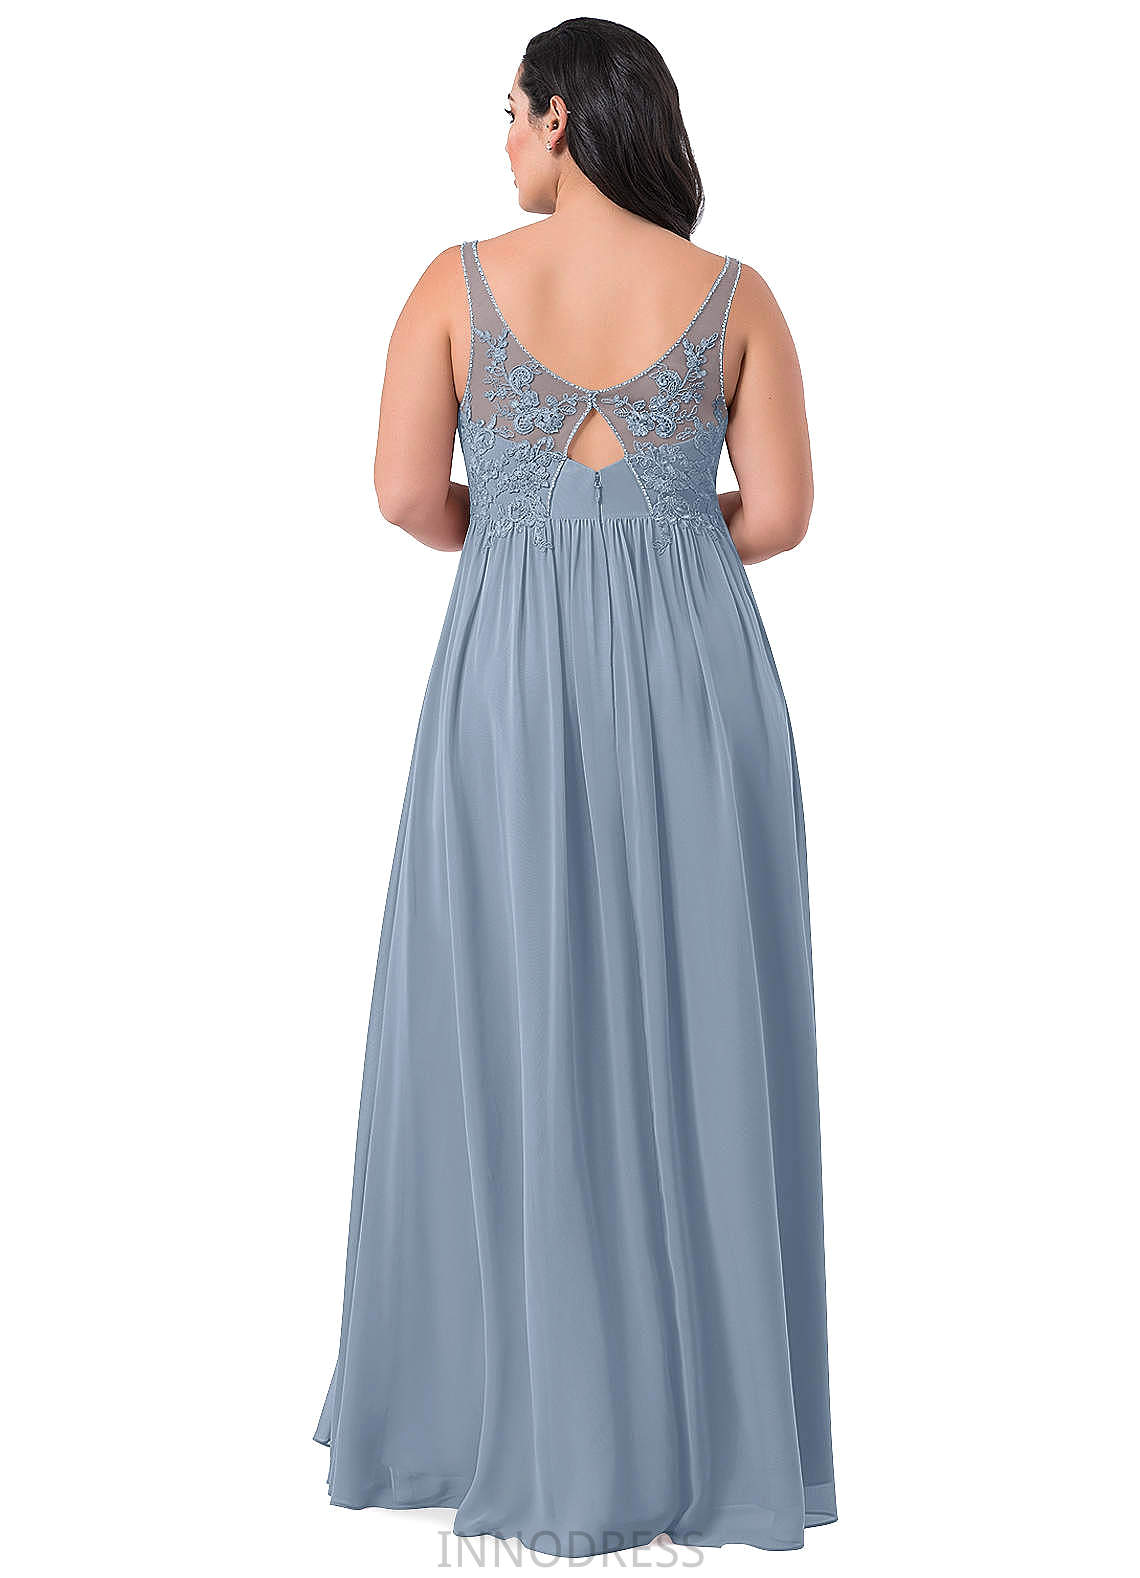 Katie Trumpet/Mermaid Natural Waist Spaghetti Staps Sleeveless Floor Length Bridesmaid Dresses